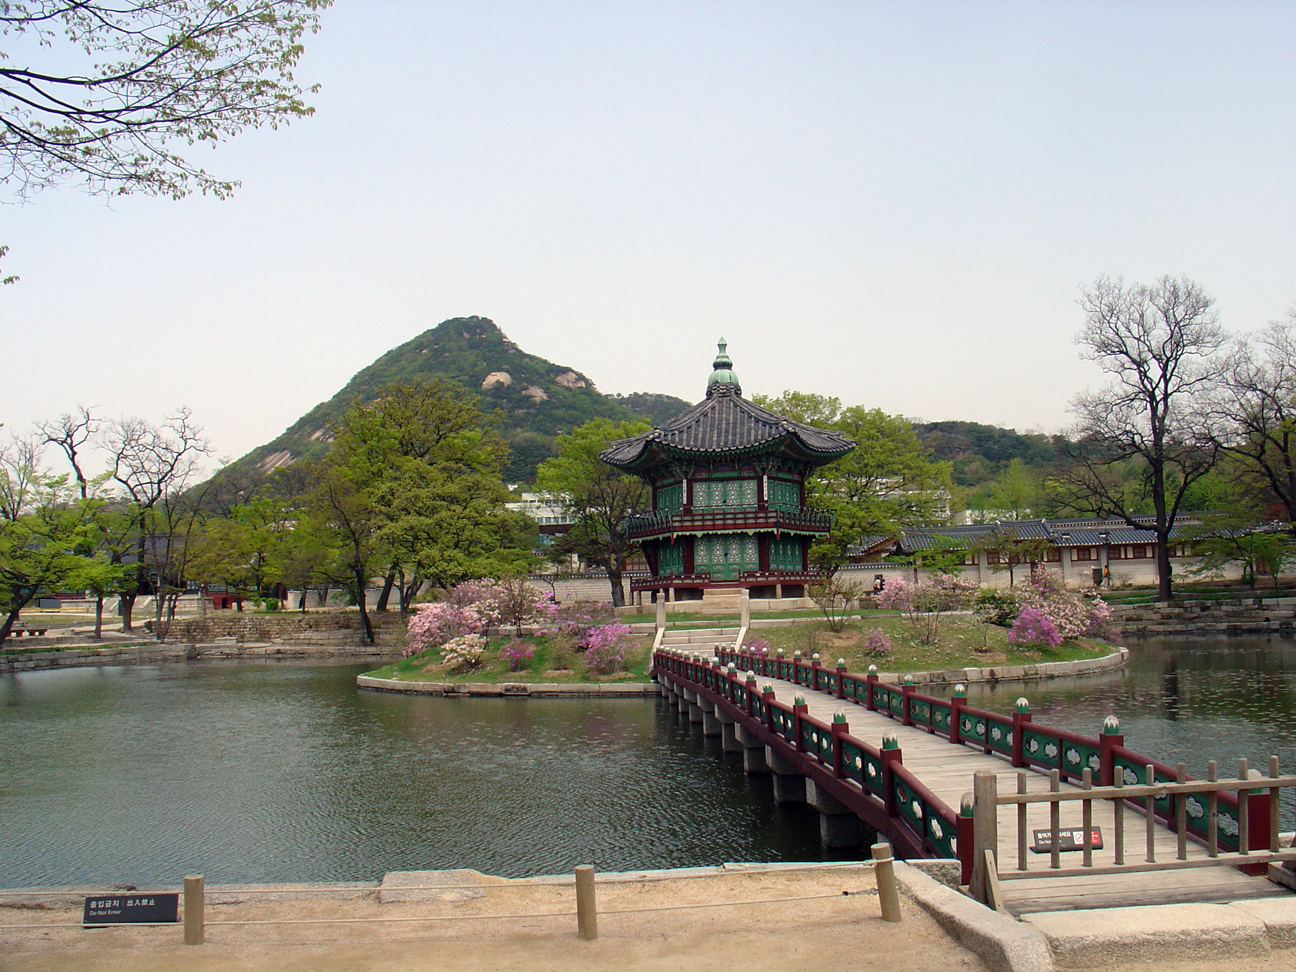 A pavilion inside Kyeongbok Palace.